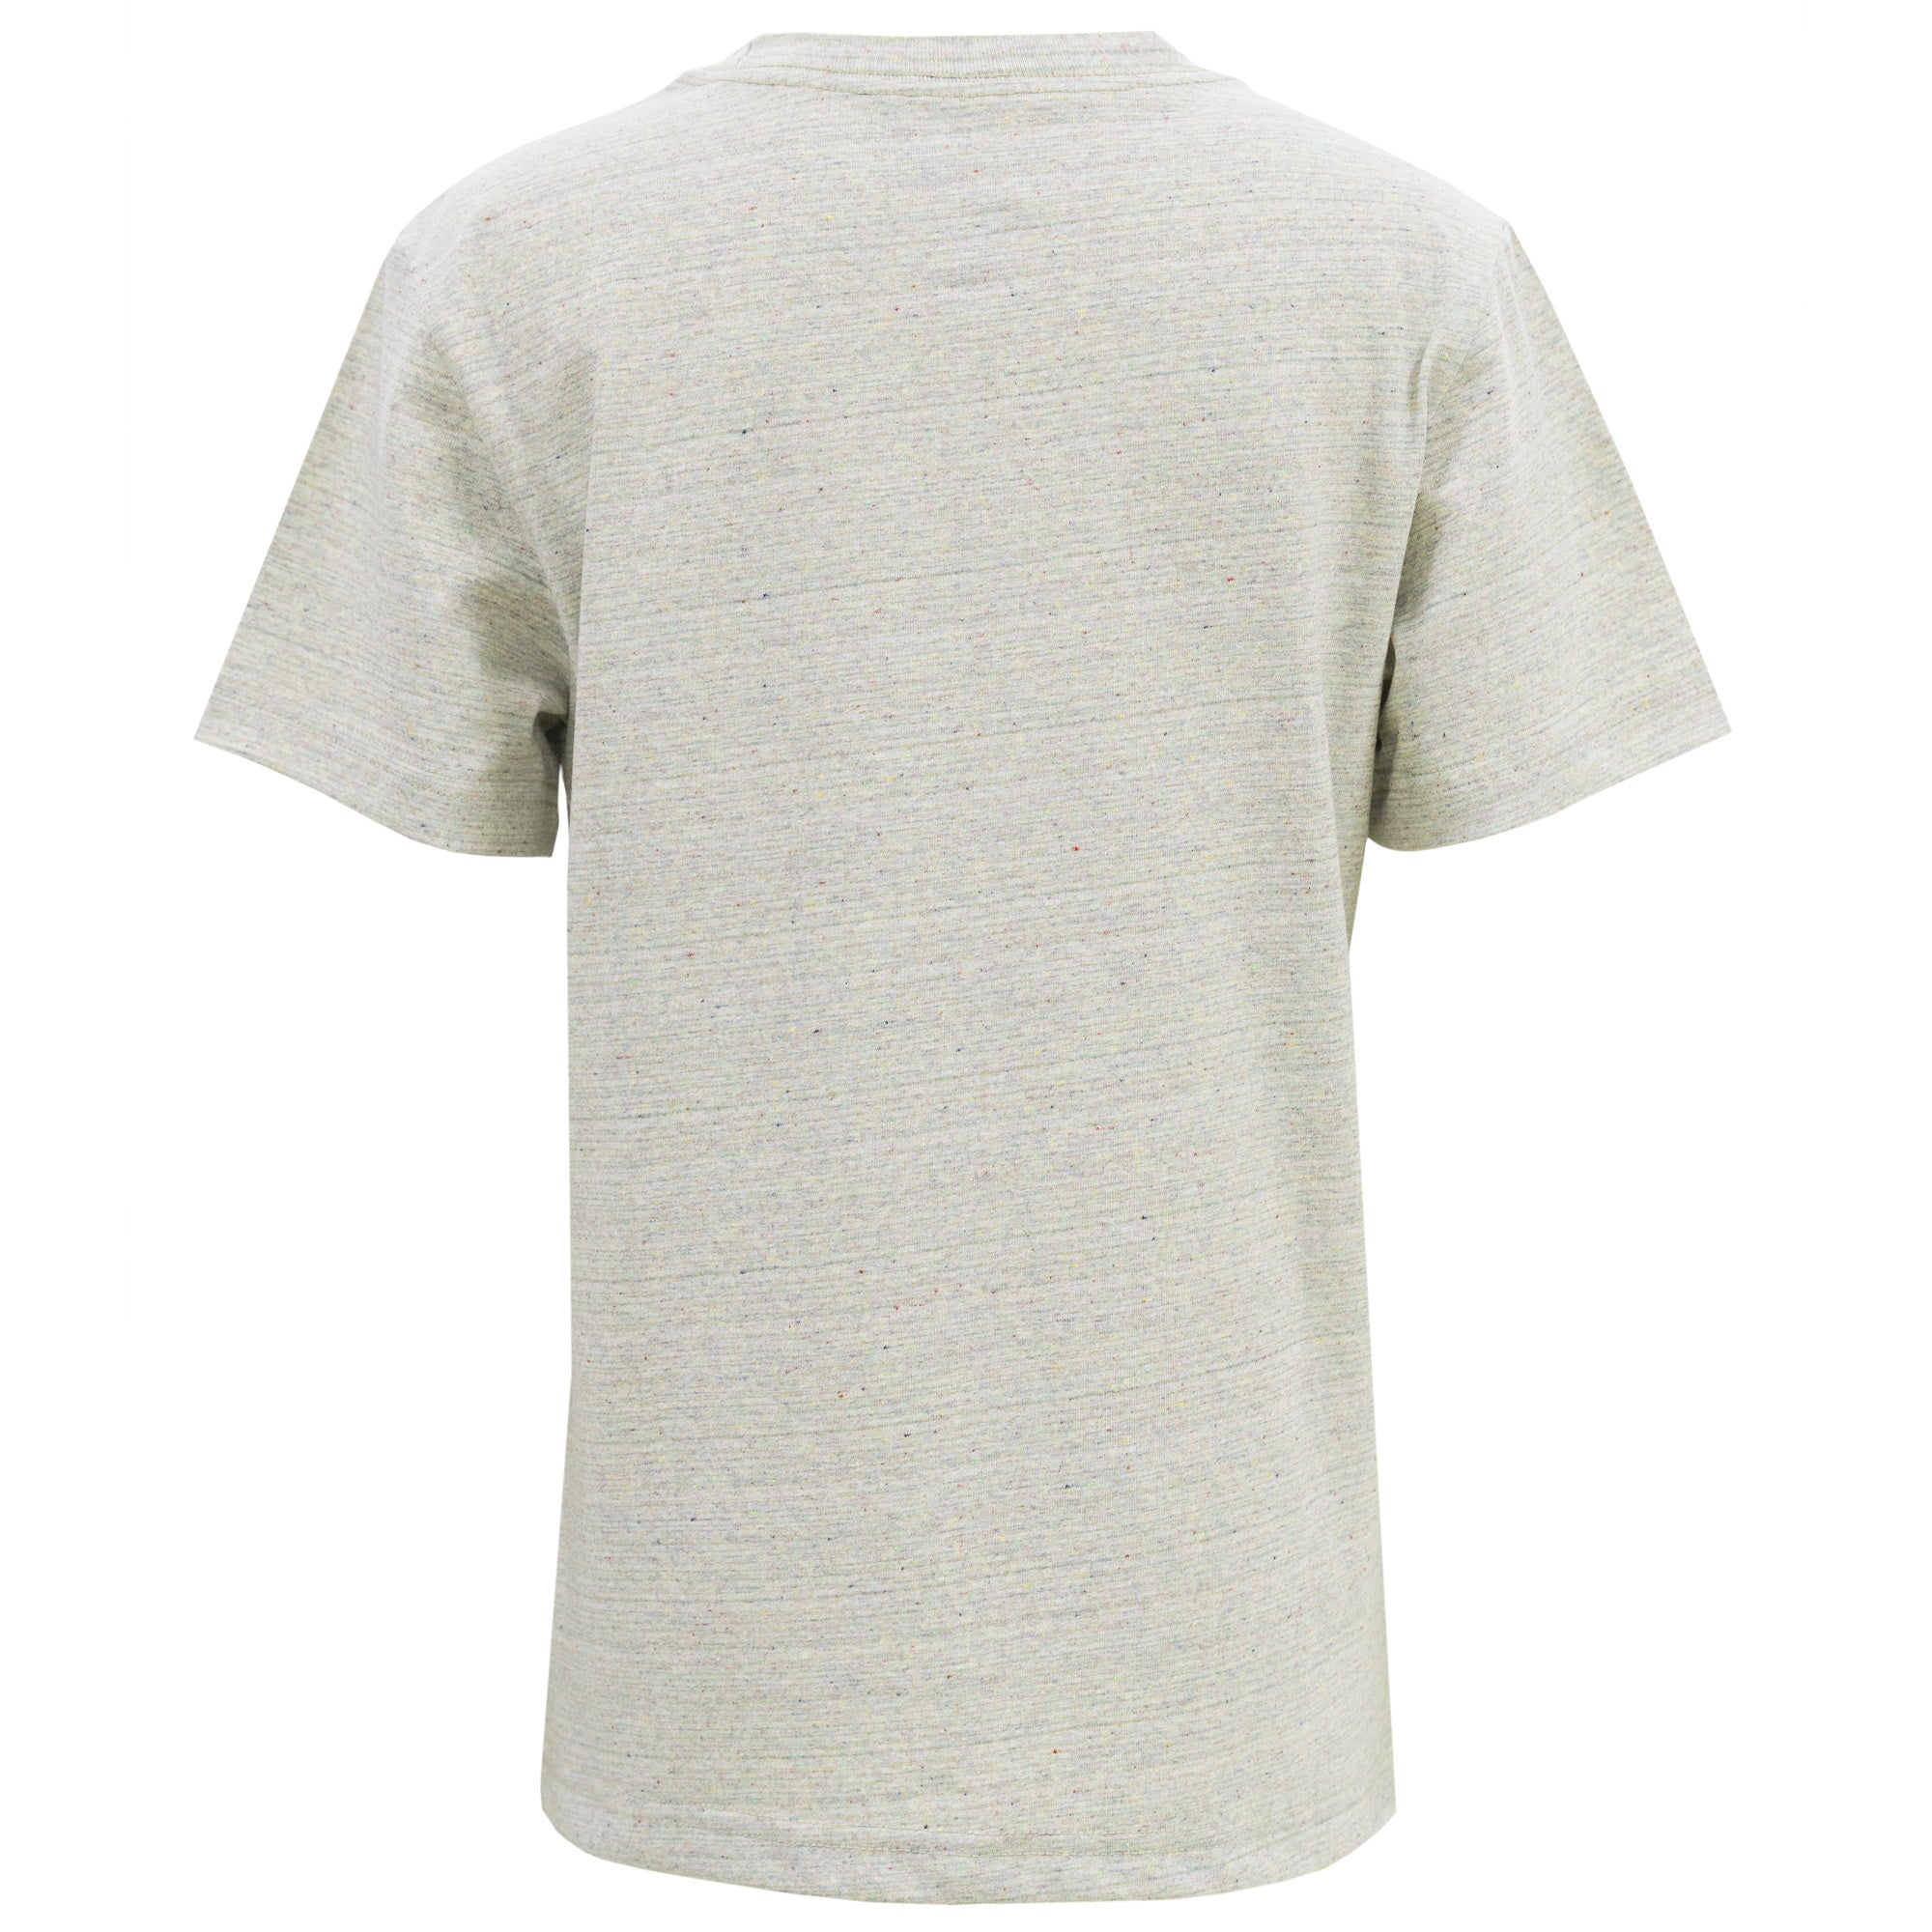 EY100 - Youth Eco Short Sleeve T-Shirt